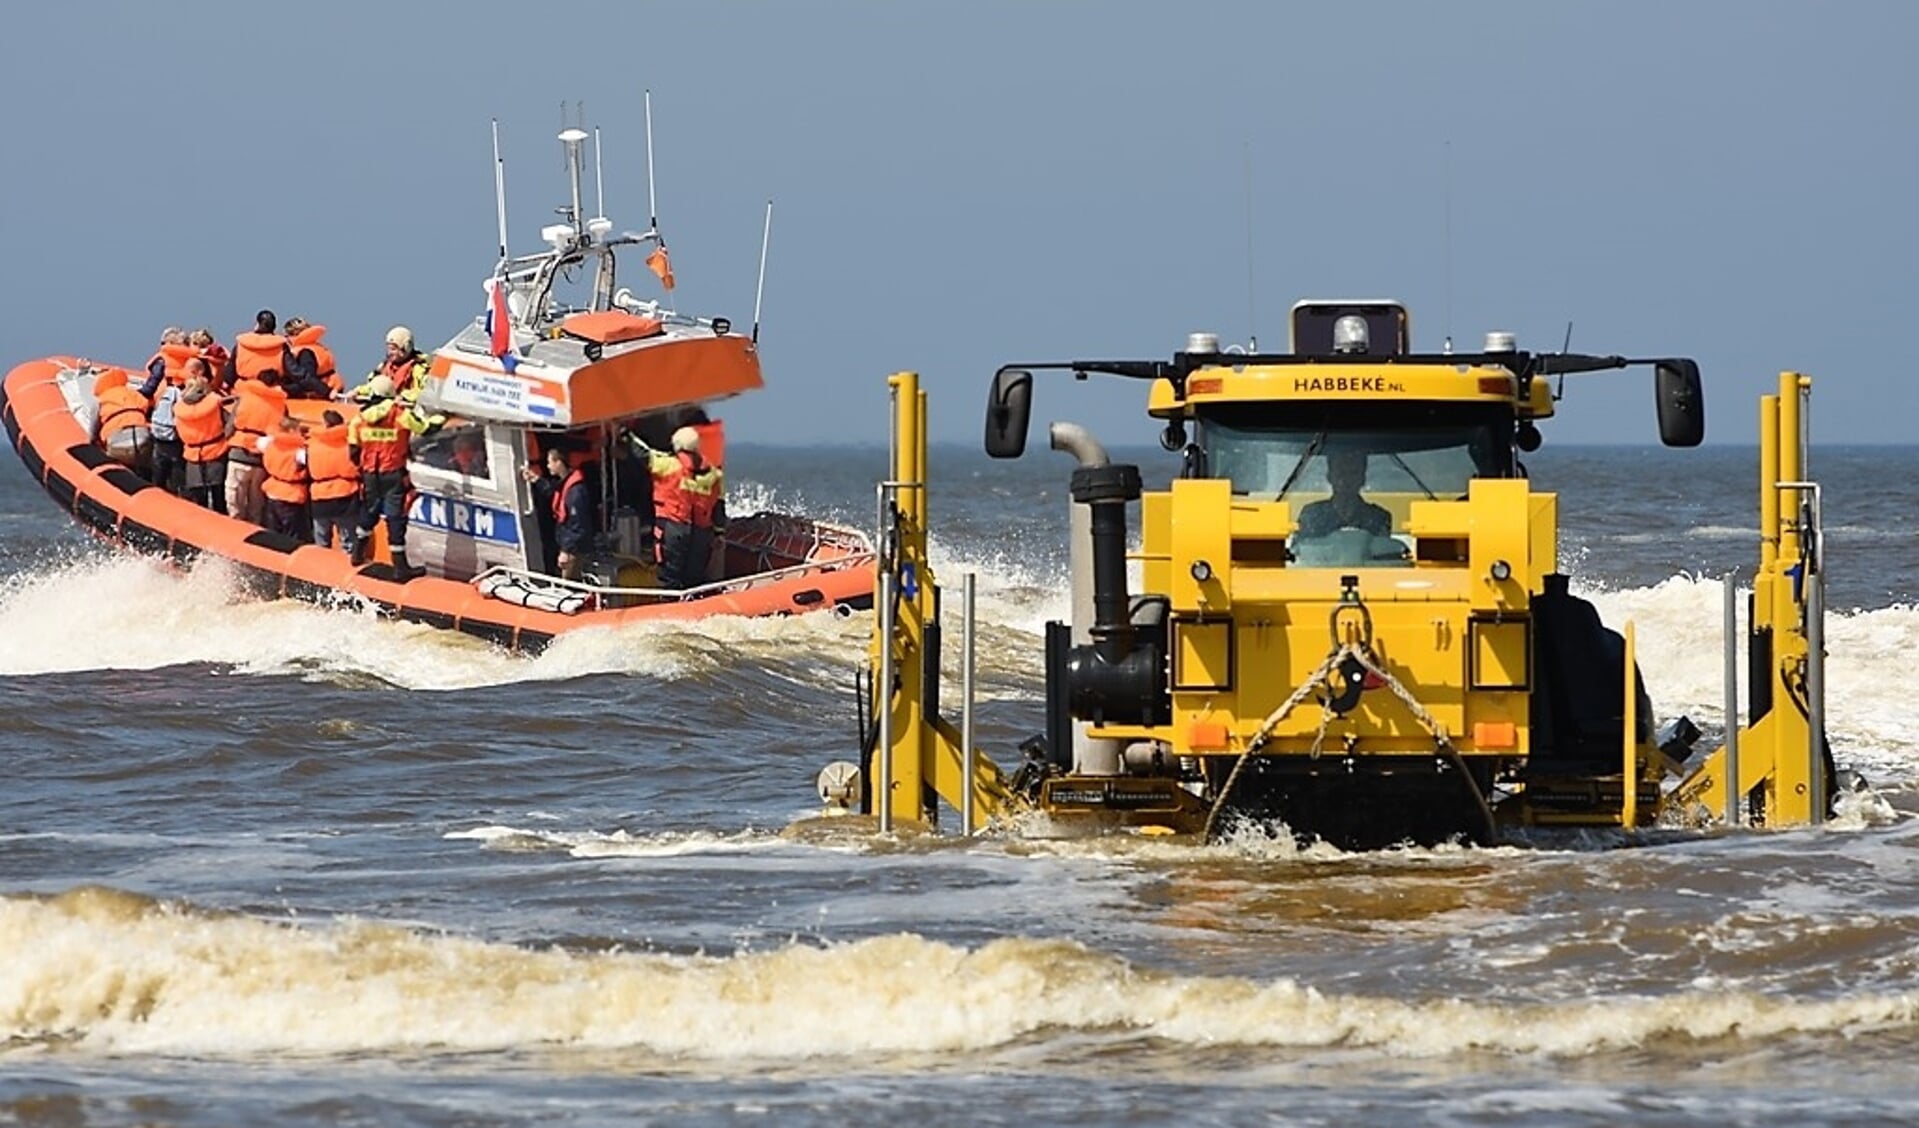 Donateurs kunnen meevaren met de reddingboot van Katwijk.